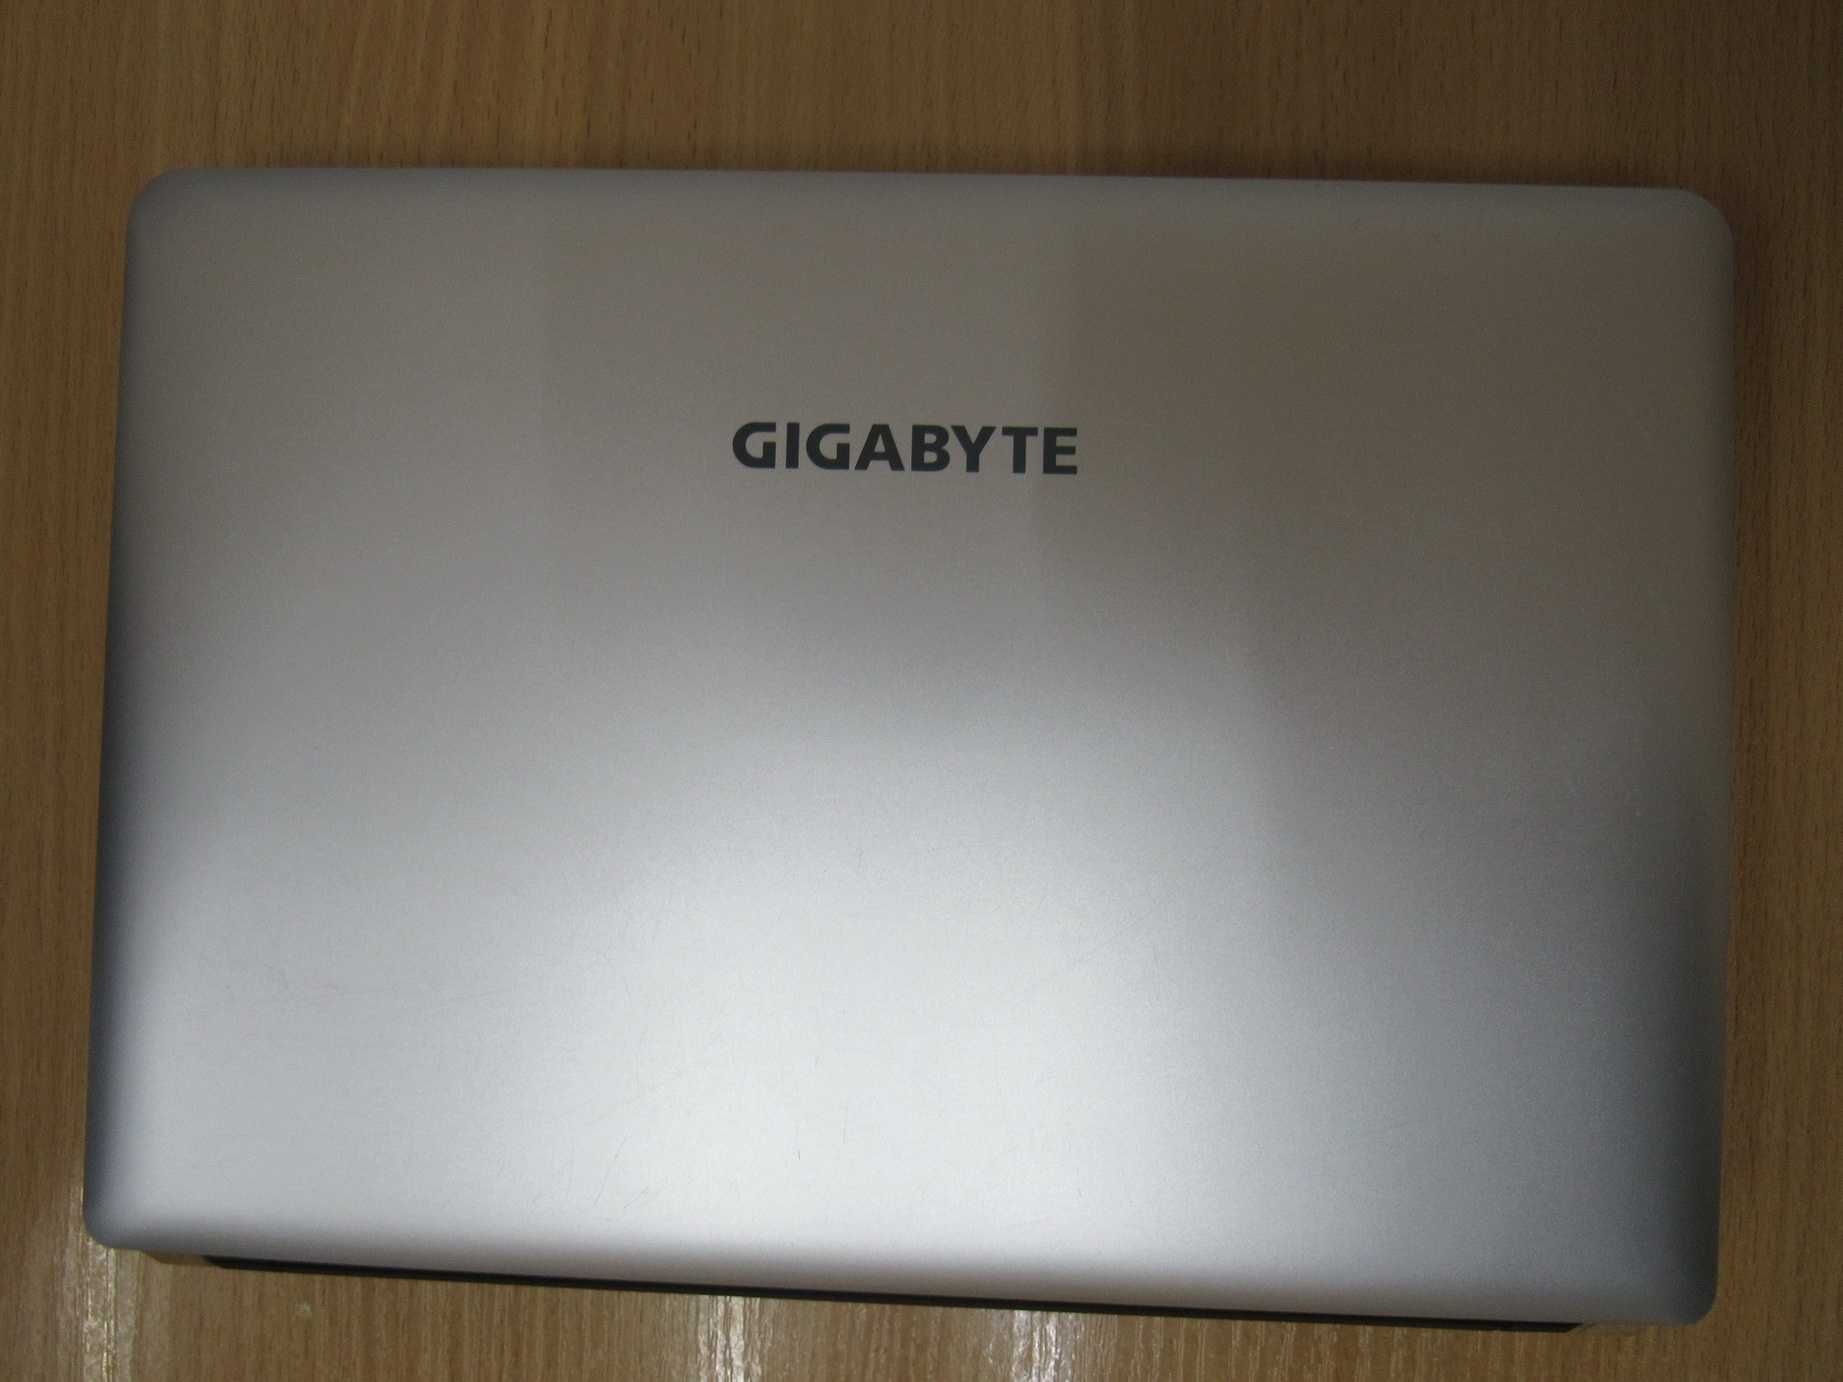 Нетбук Gigabyte 10.1" / Intel Atom N550 2 ядра / 2Gb / 320Gb HDD